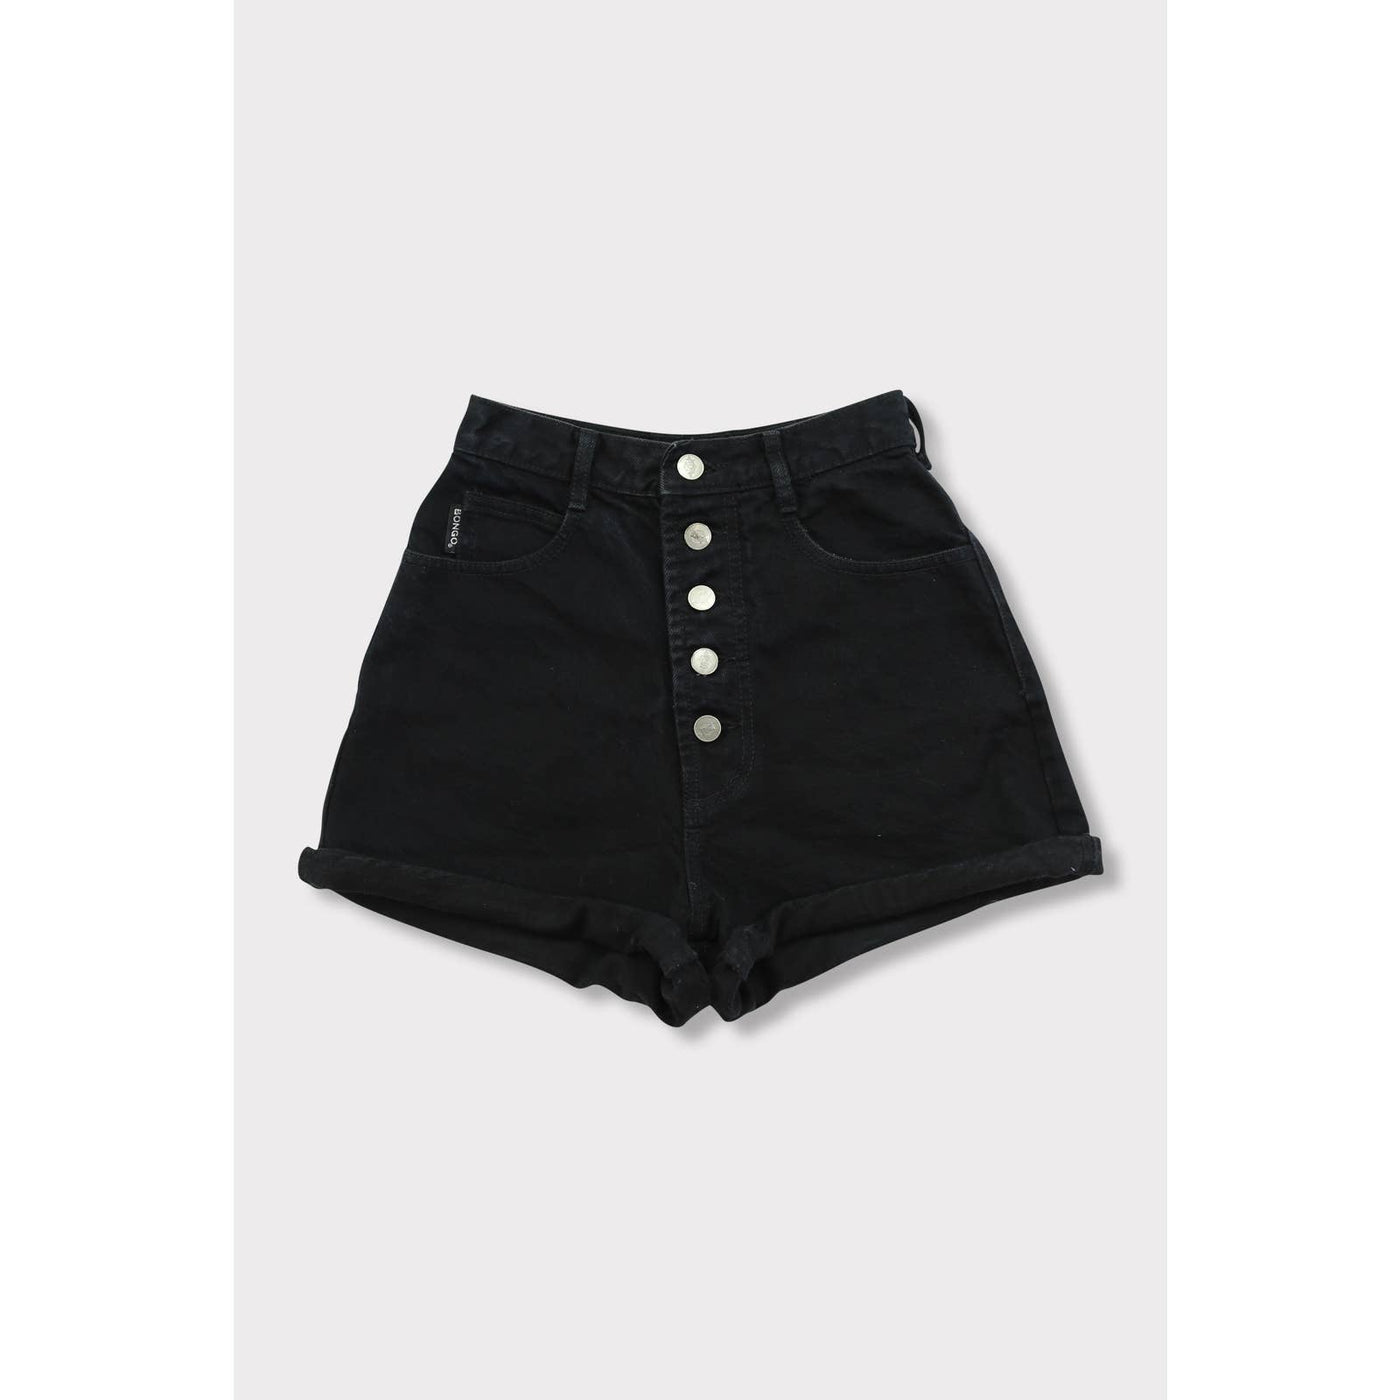 Vintage 90’s Bongo Black High Waisted Shorts